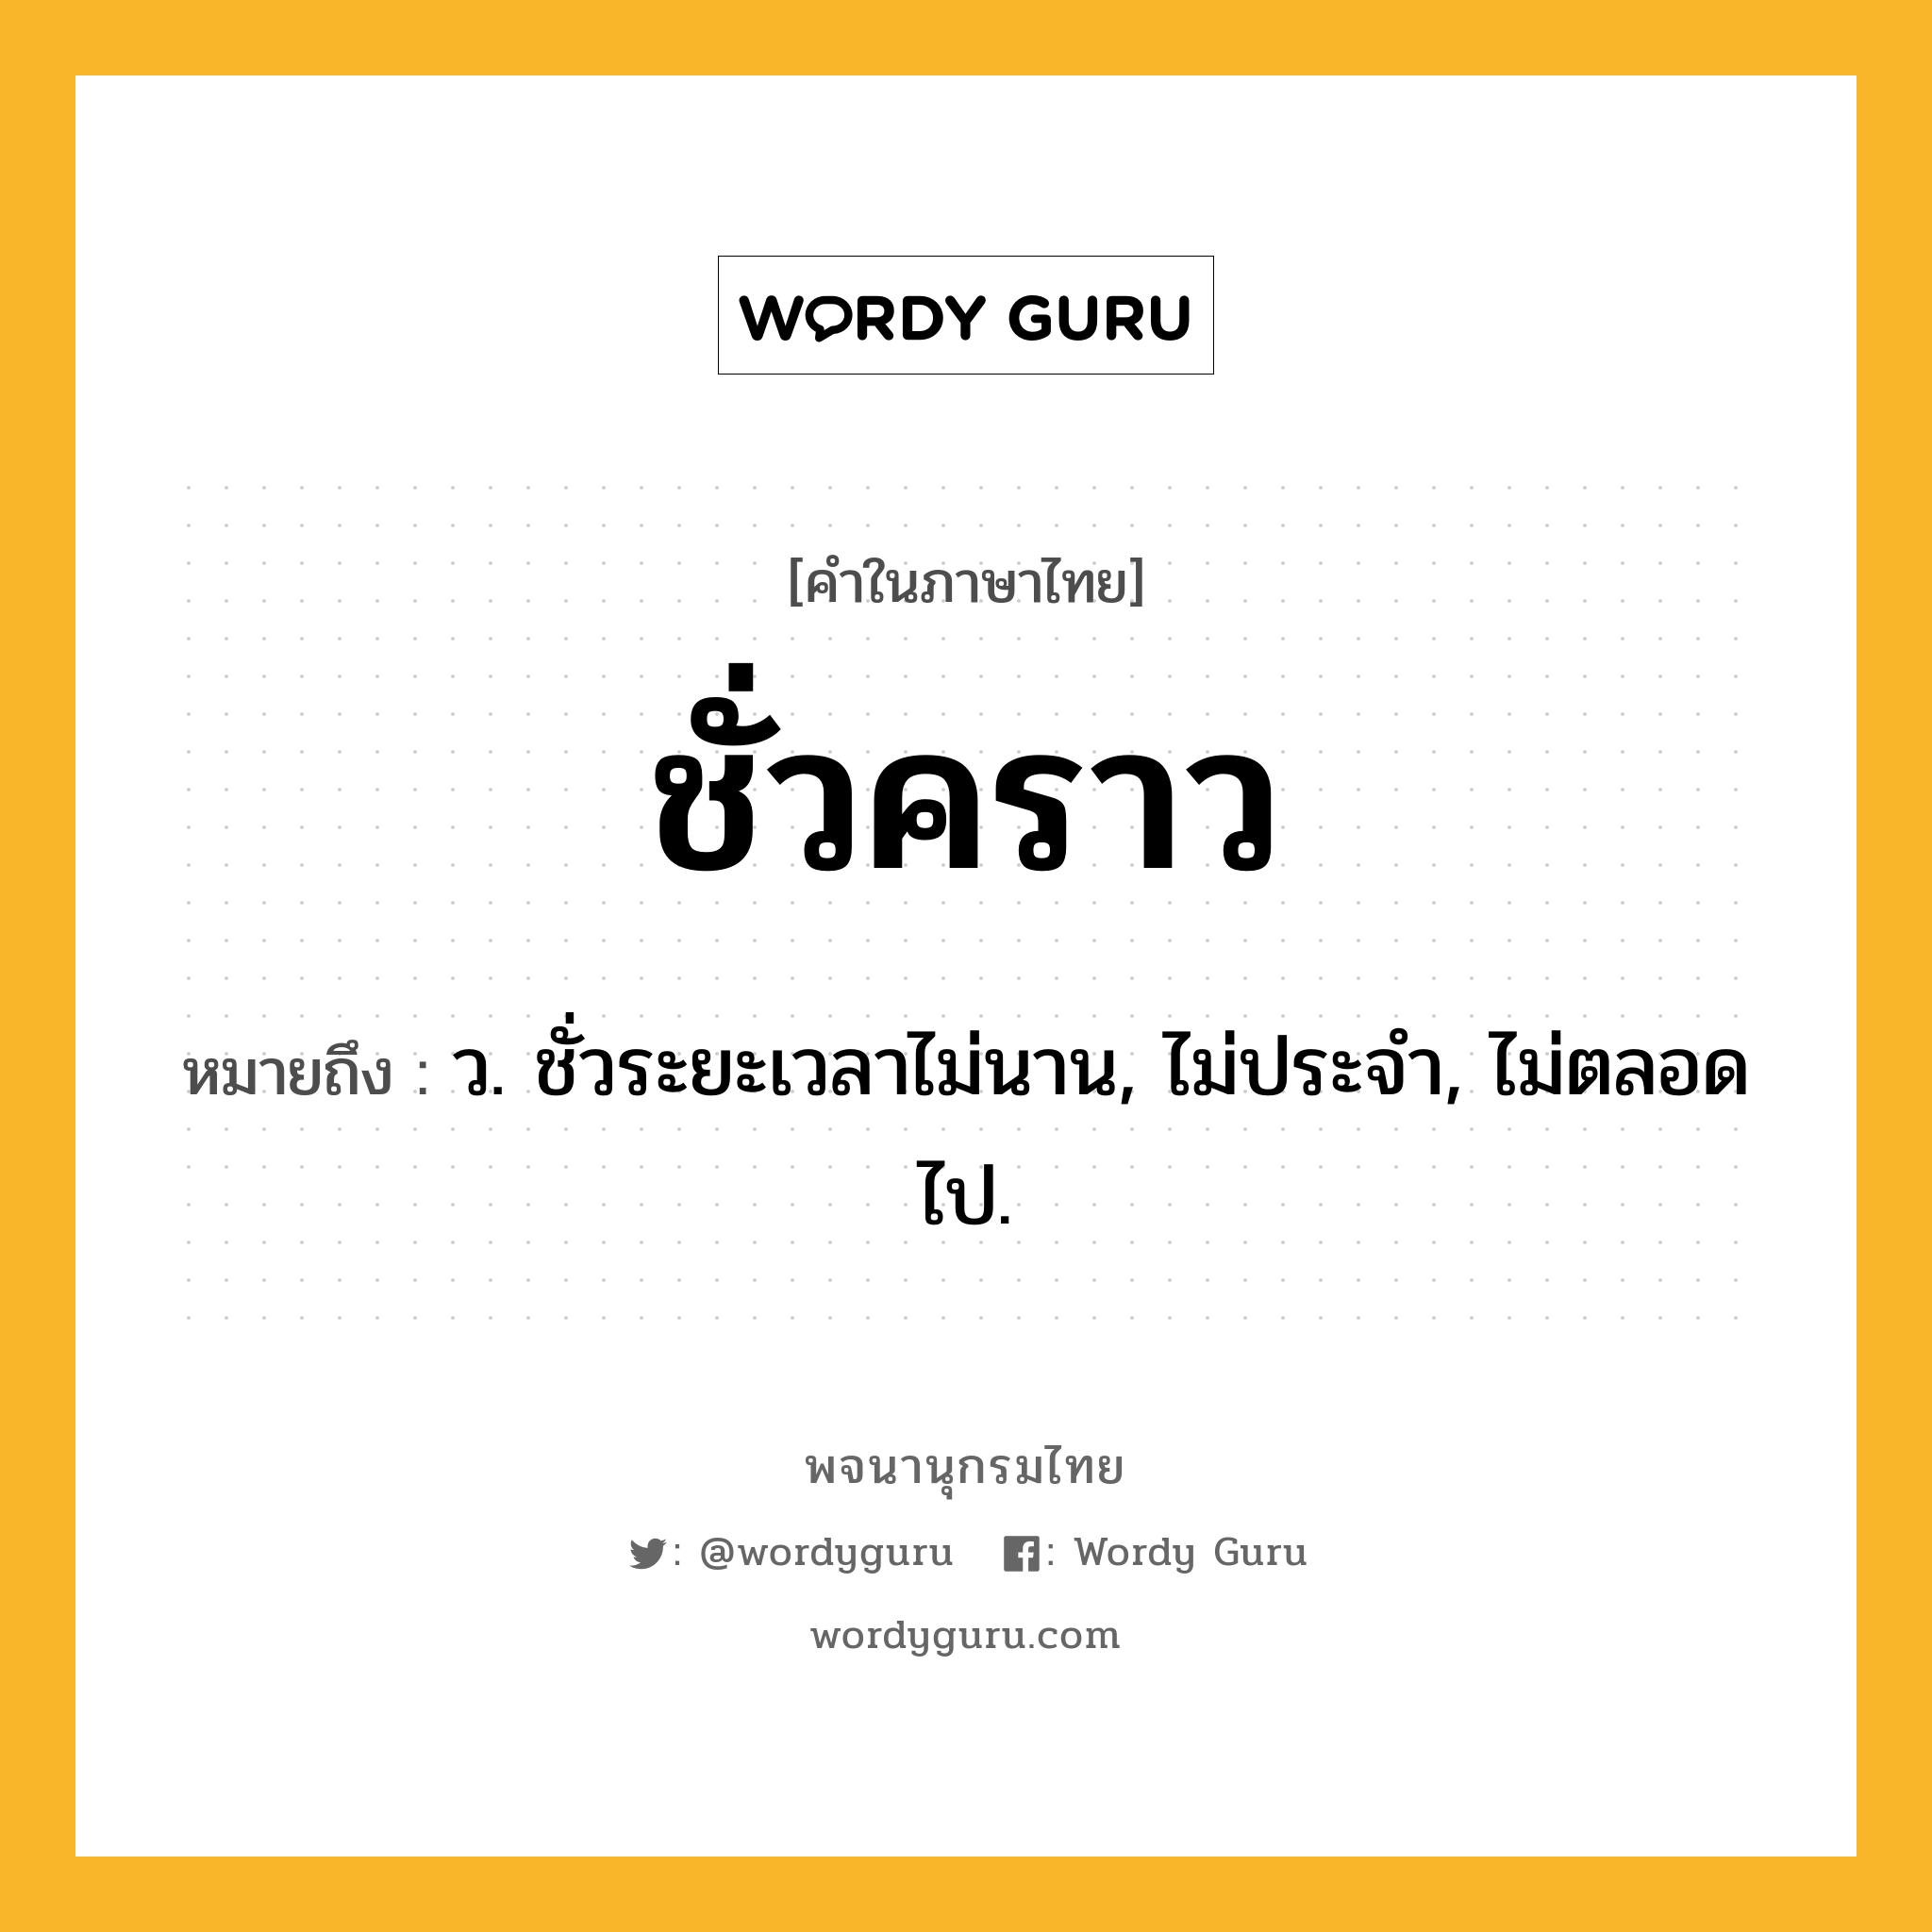 ชั่วคราว ความหมาย หมายถึงอะไร?, คำในภาษาไทย ชั่วคราว หมายถึง ว. ชั่วระยะเวลาไม่นาน, ไม่ประจํา, ไม่ตลอดไป.